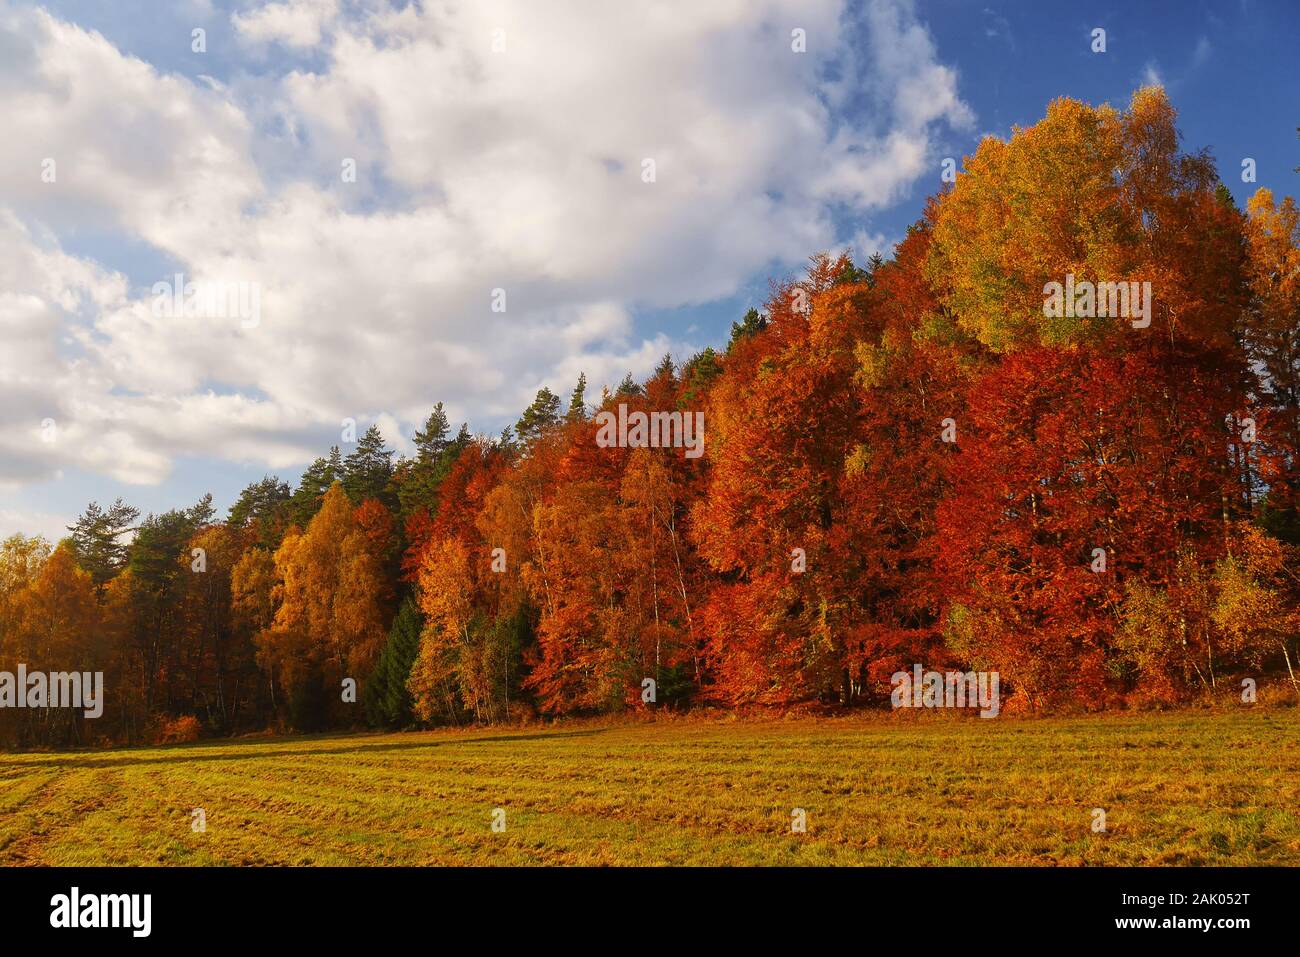 paisaje otoñal con bosque y cielo azul - árboles con hojas rojas y amarillas cerca del campo, cielo azul con nubes blancas detrás Foto de stock